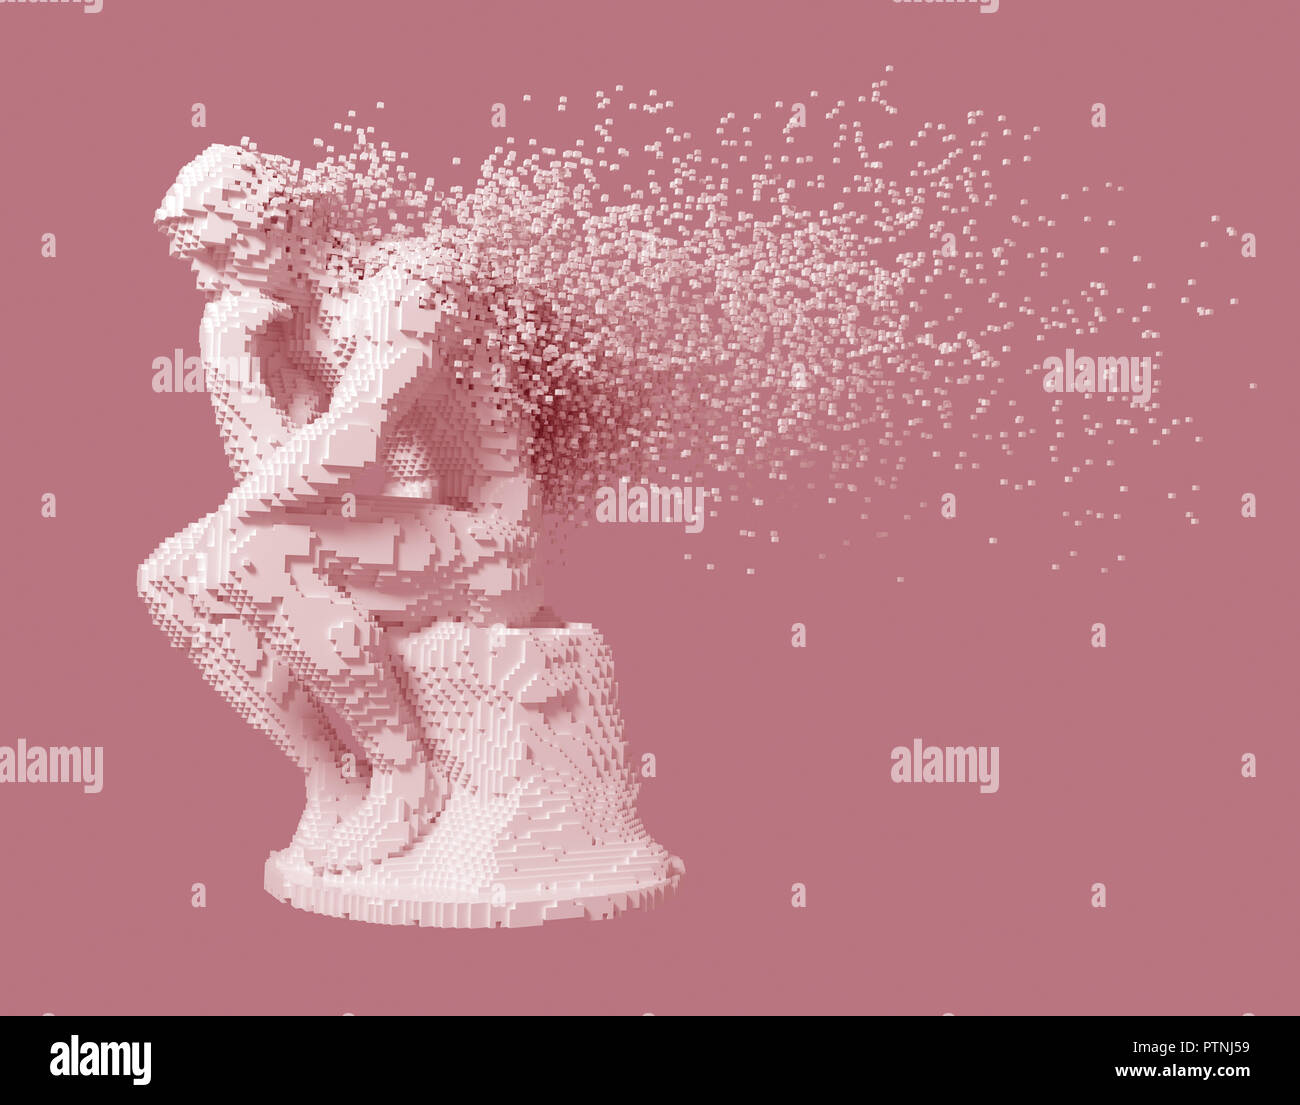 Desintegration Of Digital Sculpture Thinker On Pink Background. 3D Illustration. Stock Photo